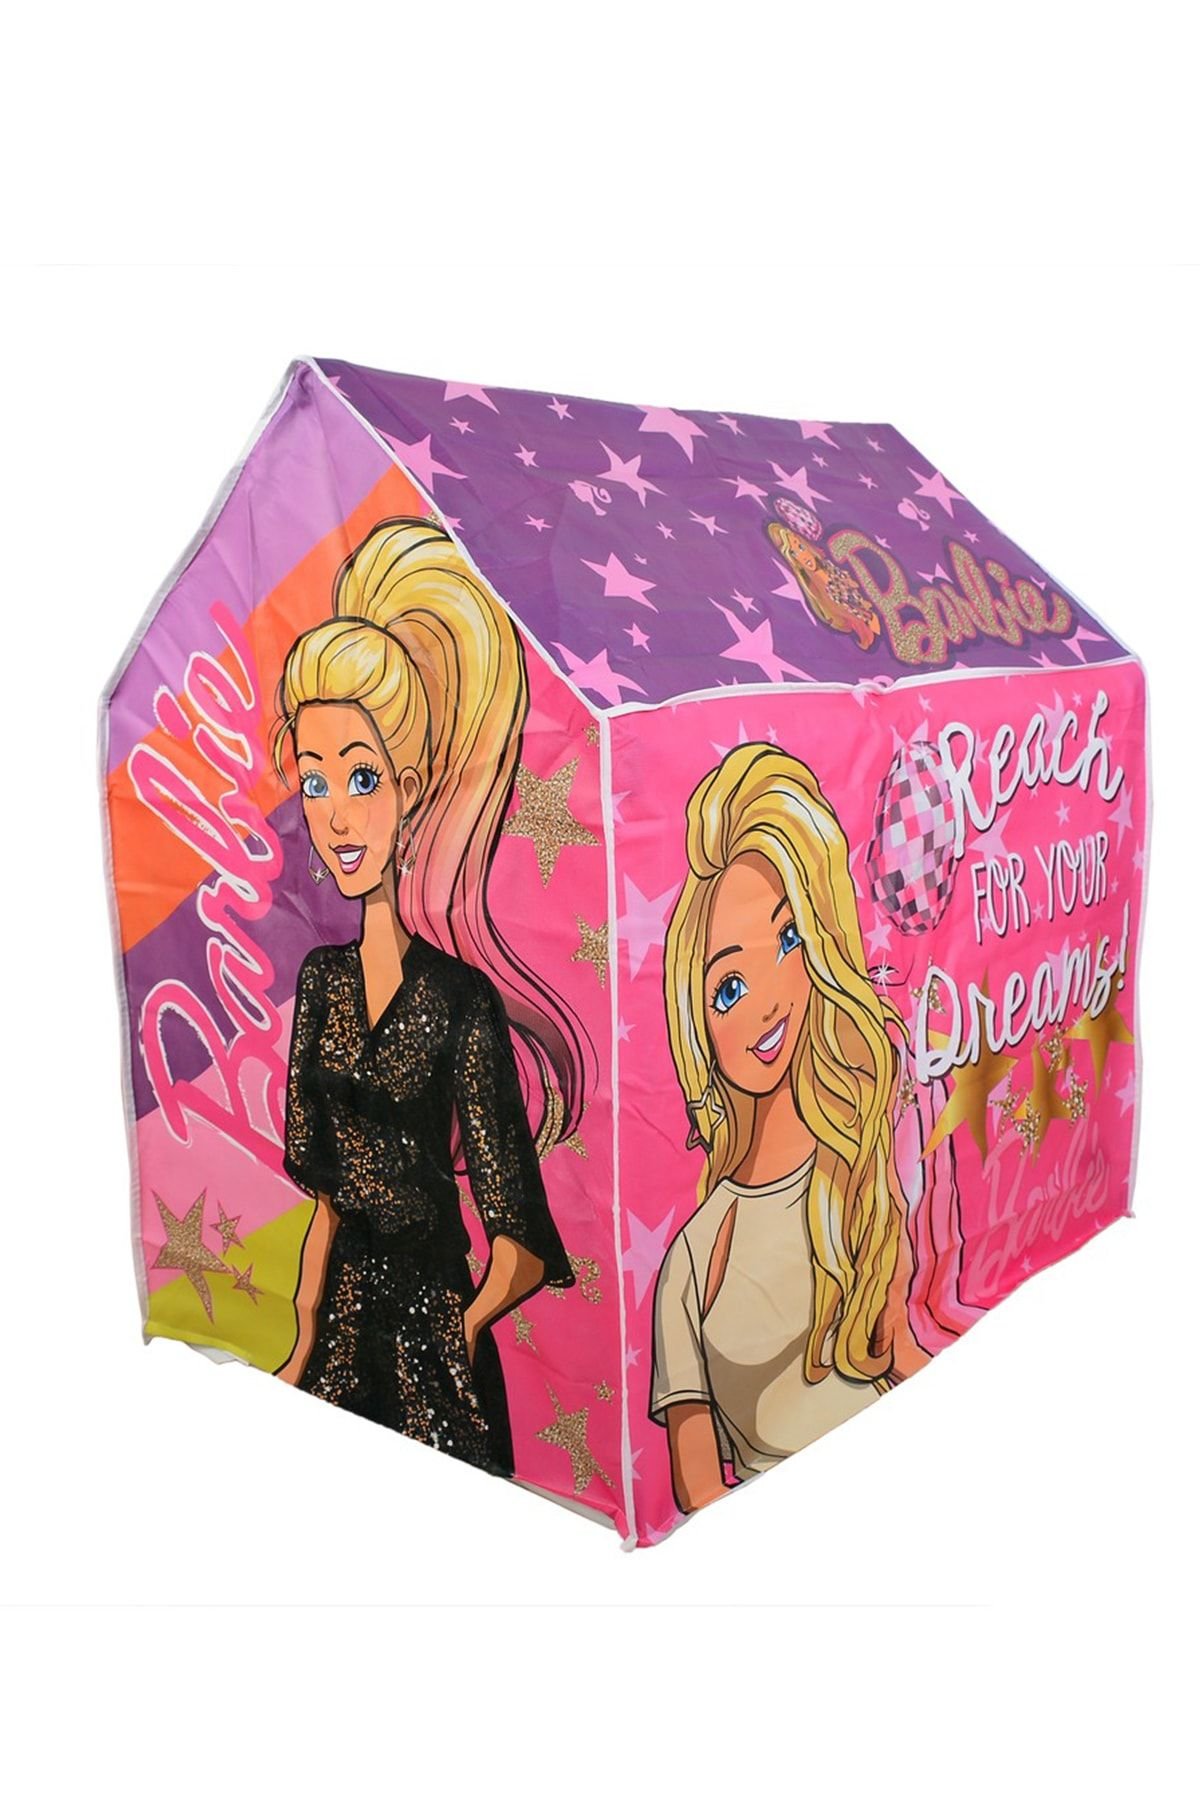 Barbie Oyun Çadırı